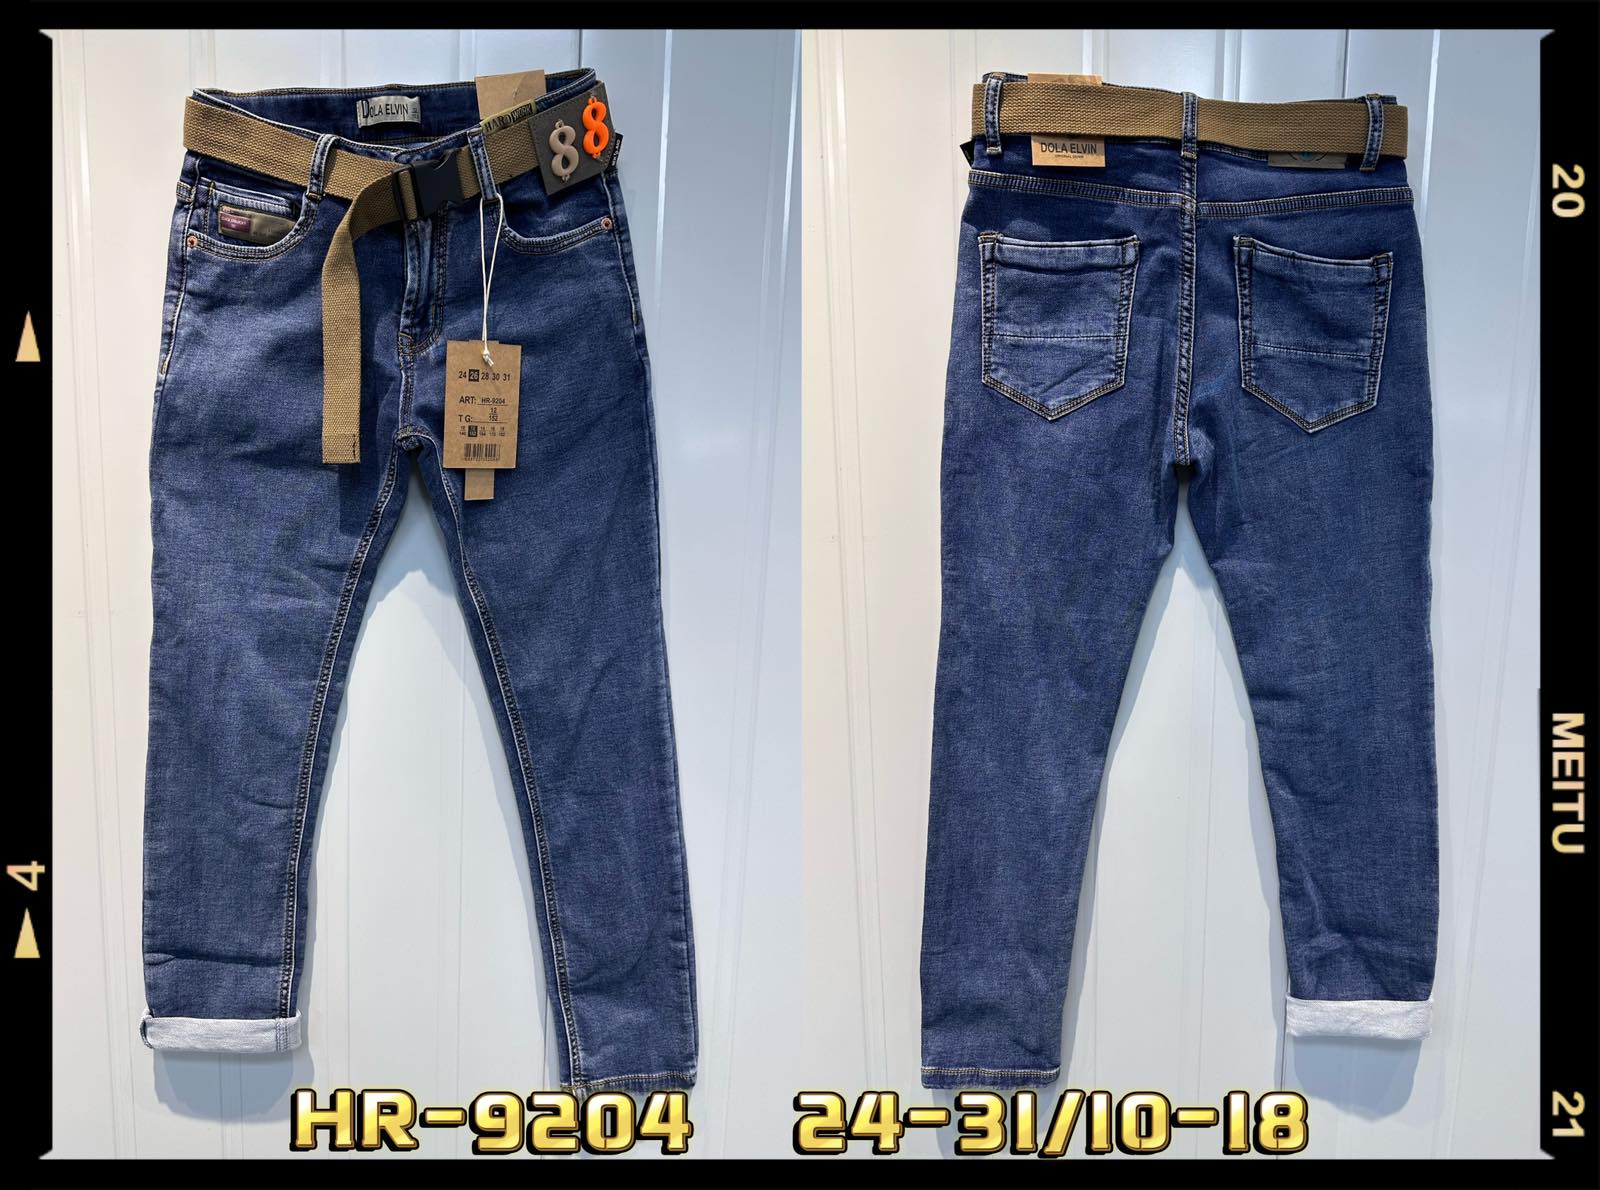 Spodnie  jeansowe  chłopięca Roz 24-31/10-18, 1 kolor Paczka 10 szt